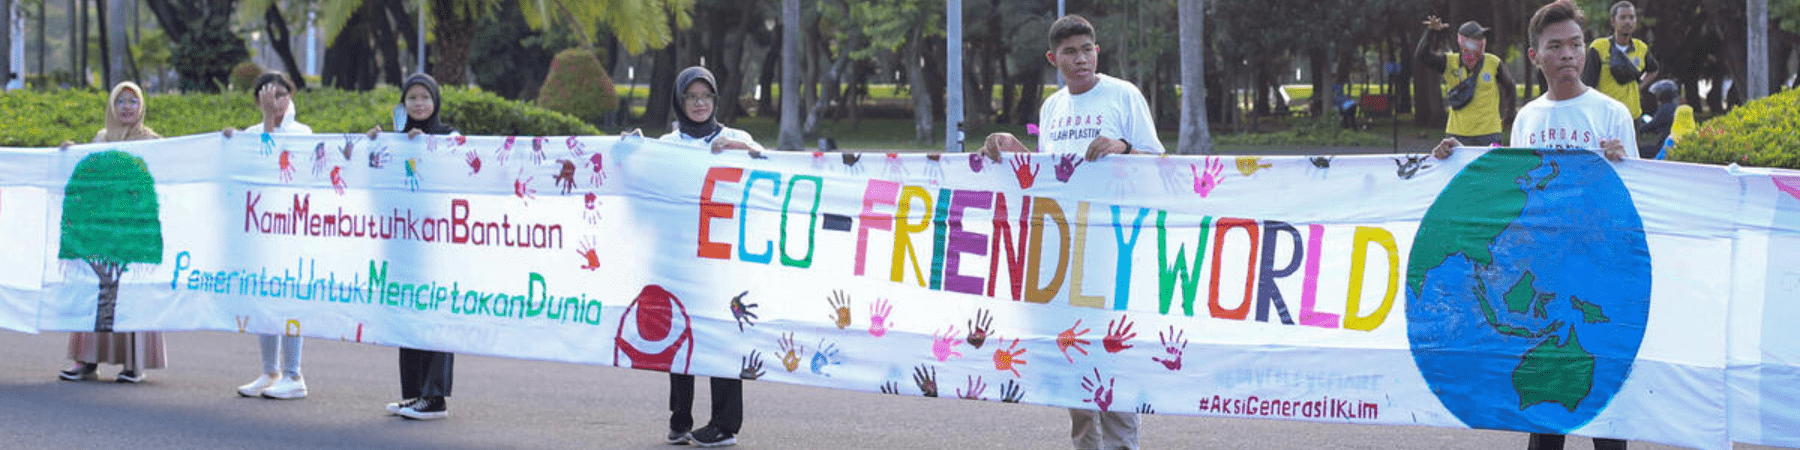 per la giornata mondiale della terra bambini e ragazzi durante manifestazione per il clima